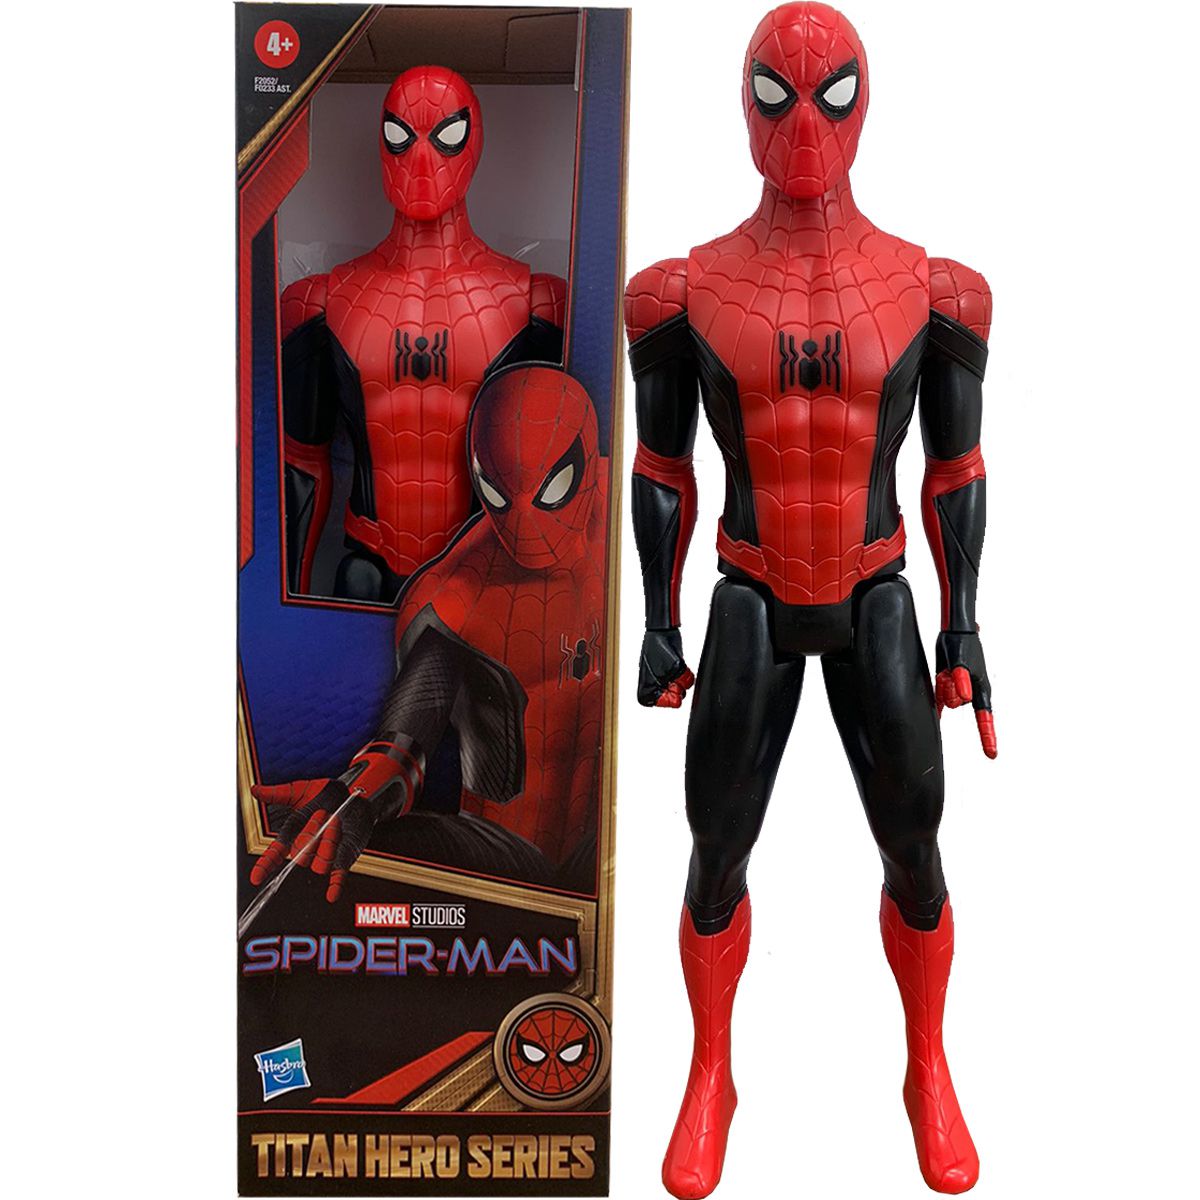 Homem Aranha Articulado - Spider Man Action Figure